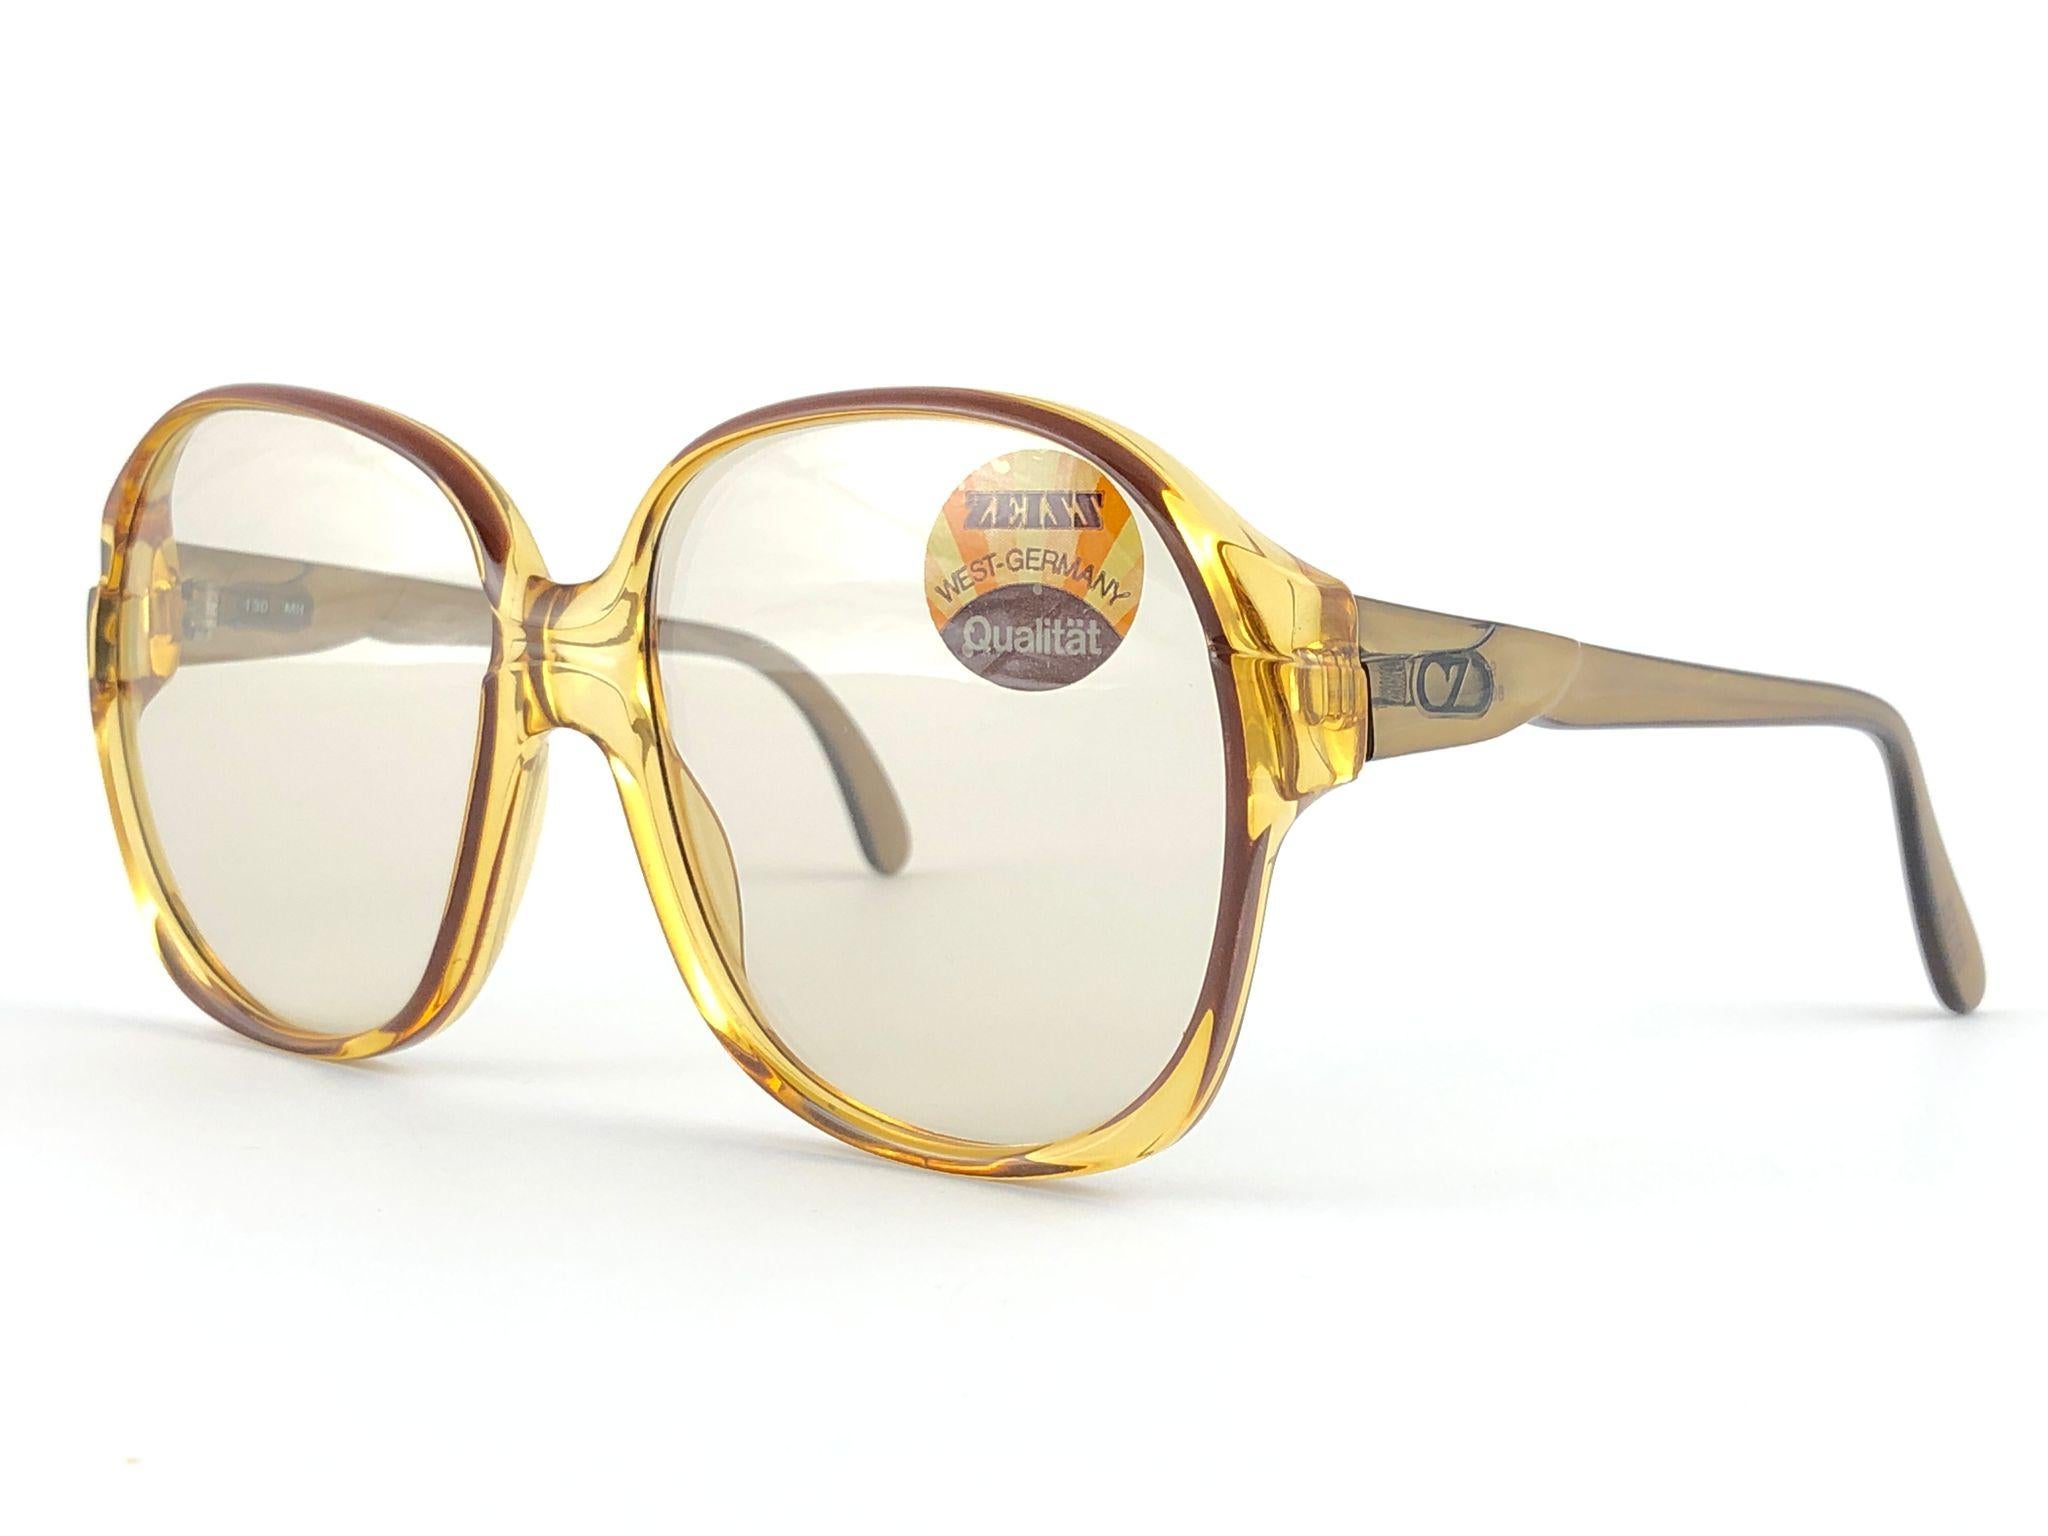 Blanc Zeiss lunettes de soleil vintage neuves en ambre translucide, fabriquées en Allemagne, années 8068 en vente